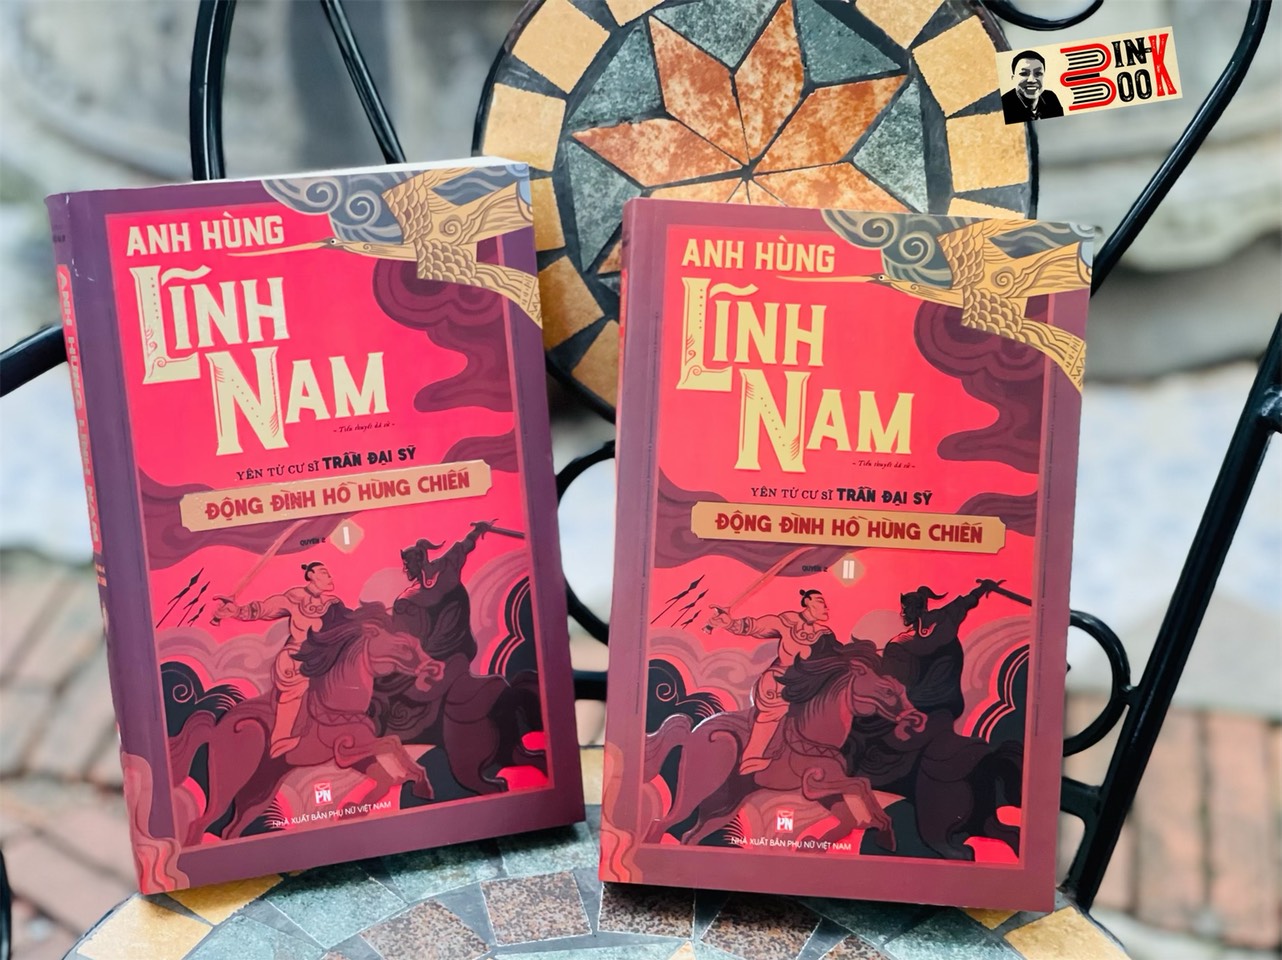 (Bộ 2 Cuốn) BỘ ANH HÙNG LĨNH NAM - QUYỂN 2 - Đông Đinh Hồ Hùng Chiến – Yên Tử Cư Sĩ Trần Đại Sỹ - NXB Phụ Nữ Việt Nam (bìa mềm)